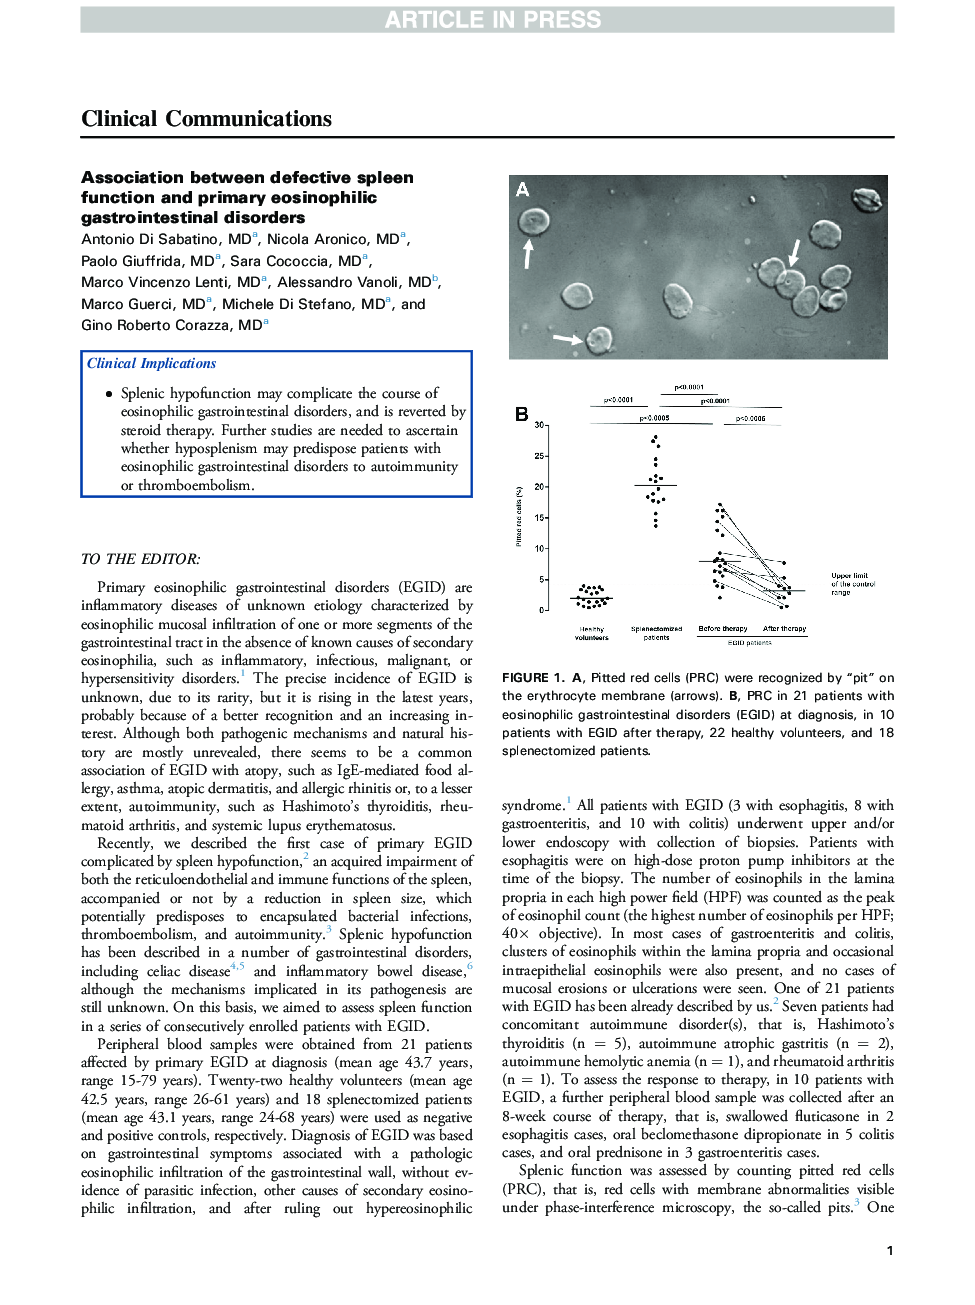 ارتباط بین عملکرد ناقل طحال و اختلالات گوارشی اولیه ائوزینوفیلی 